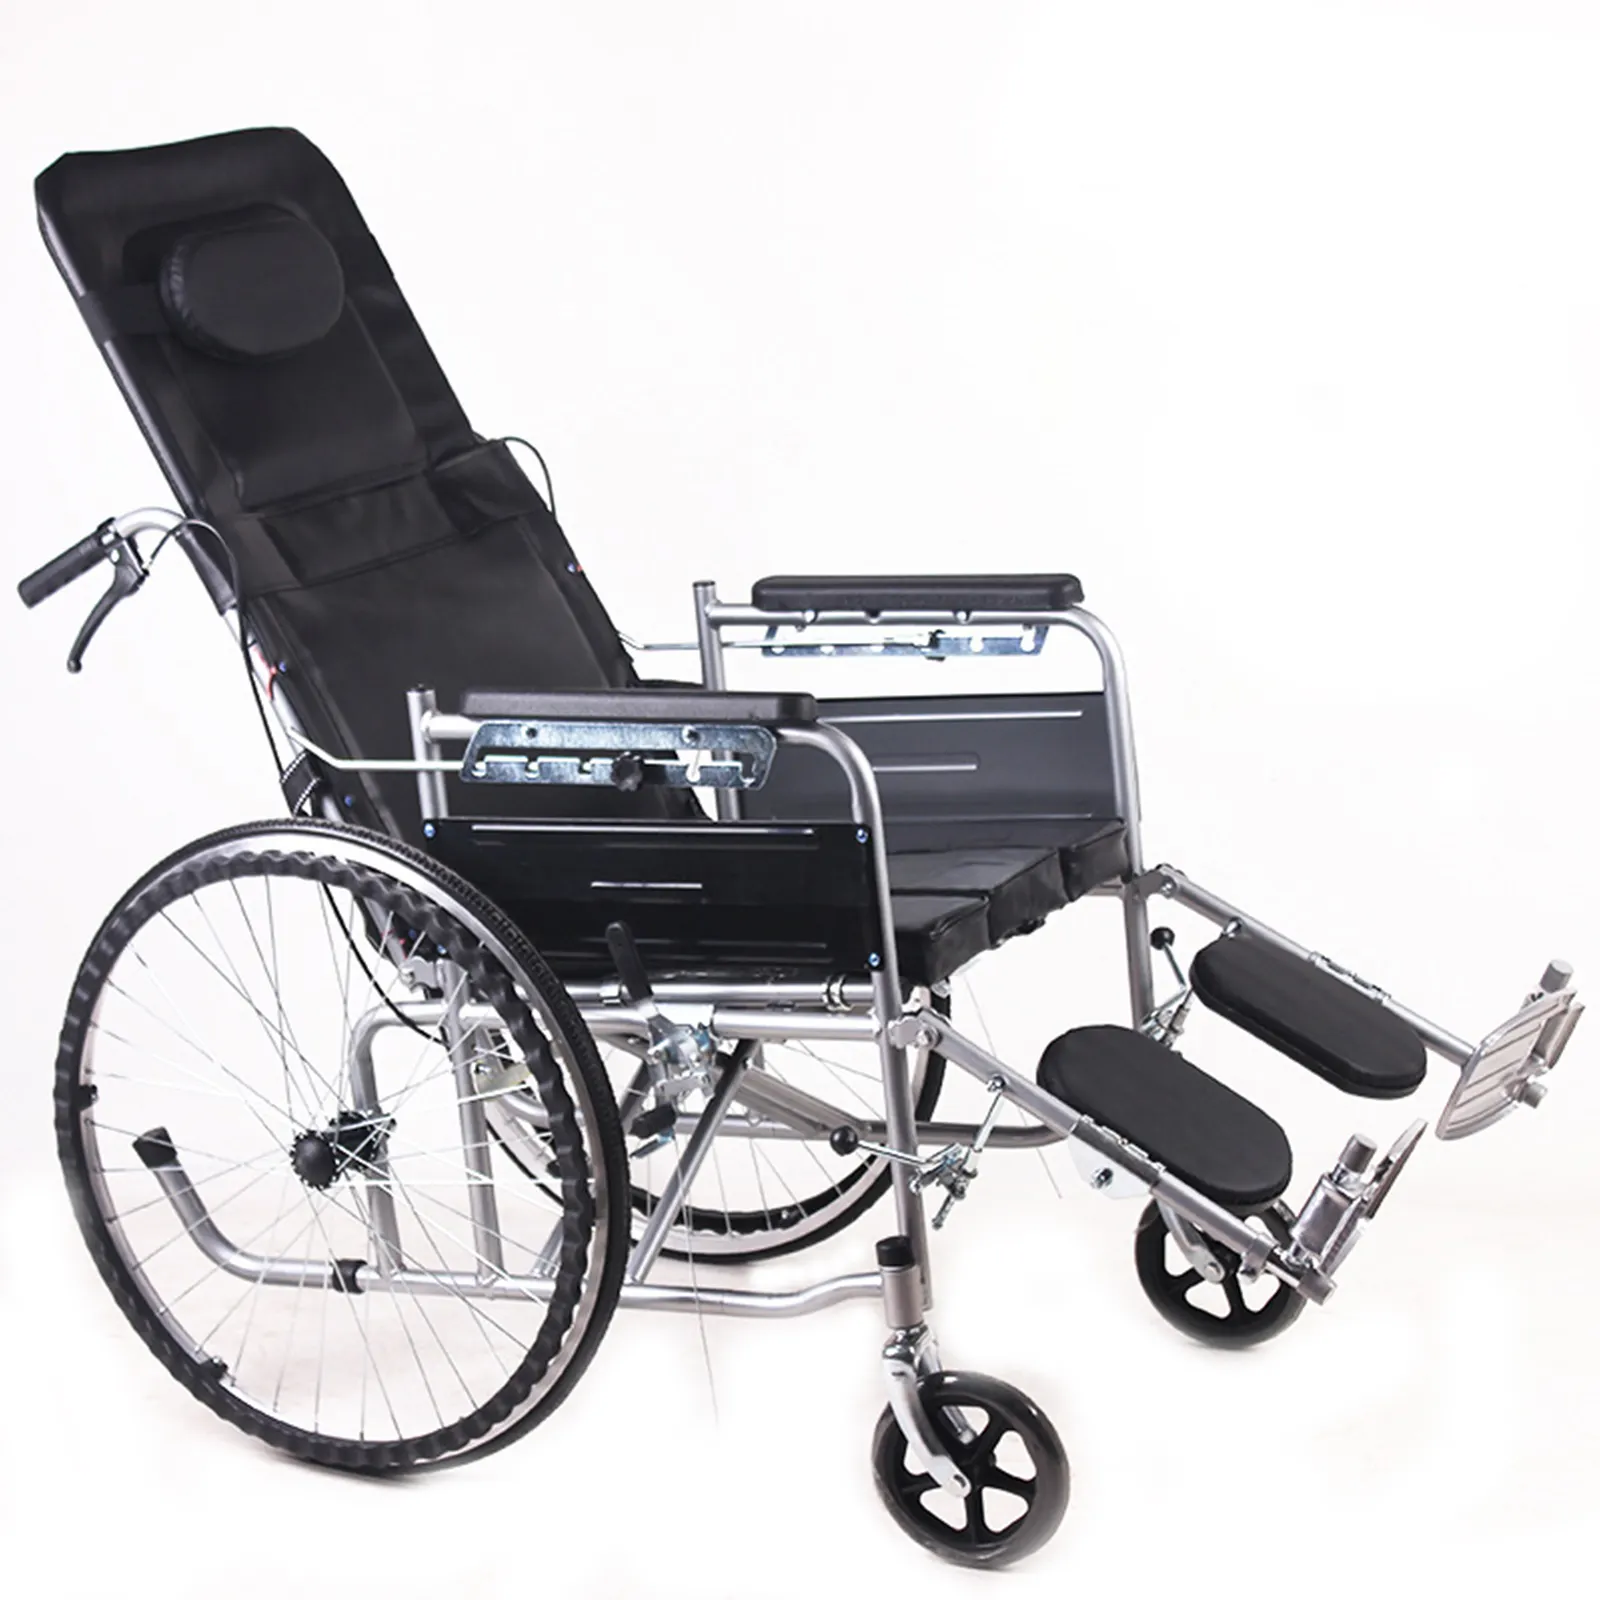 Migliore qualità prezzo più basso schienale pieghevole mezzo cuscino per sedia a rotelle manuale reclinabile completo e comoda